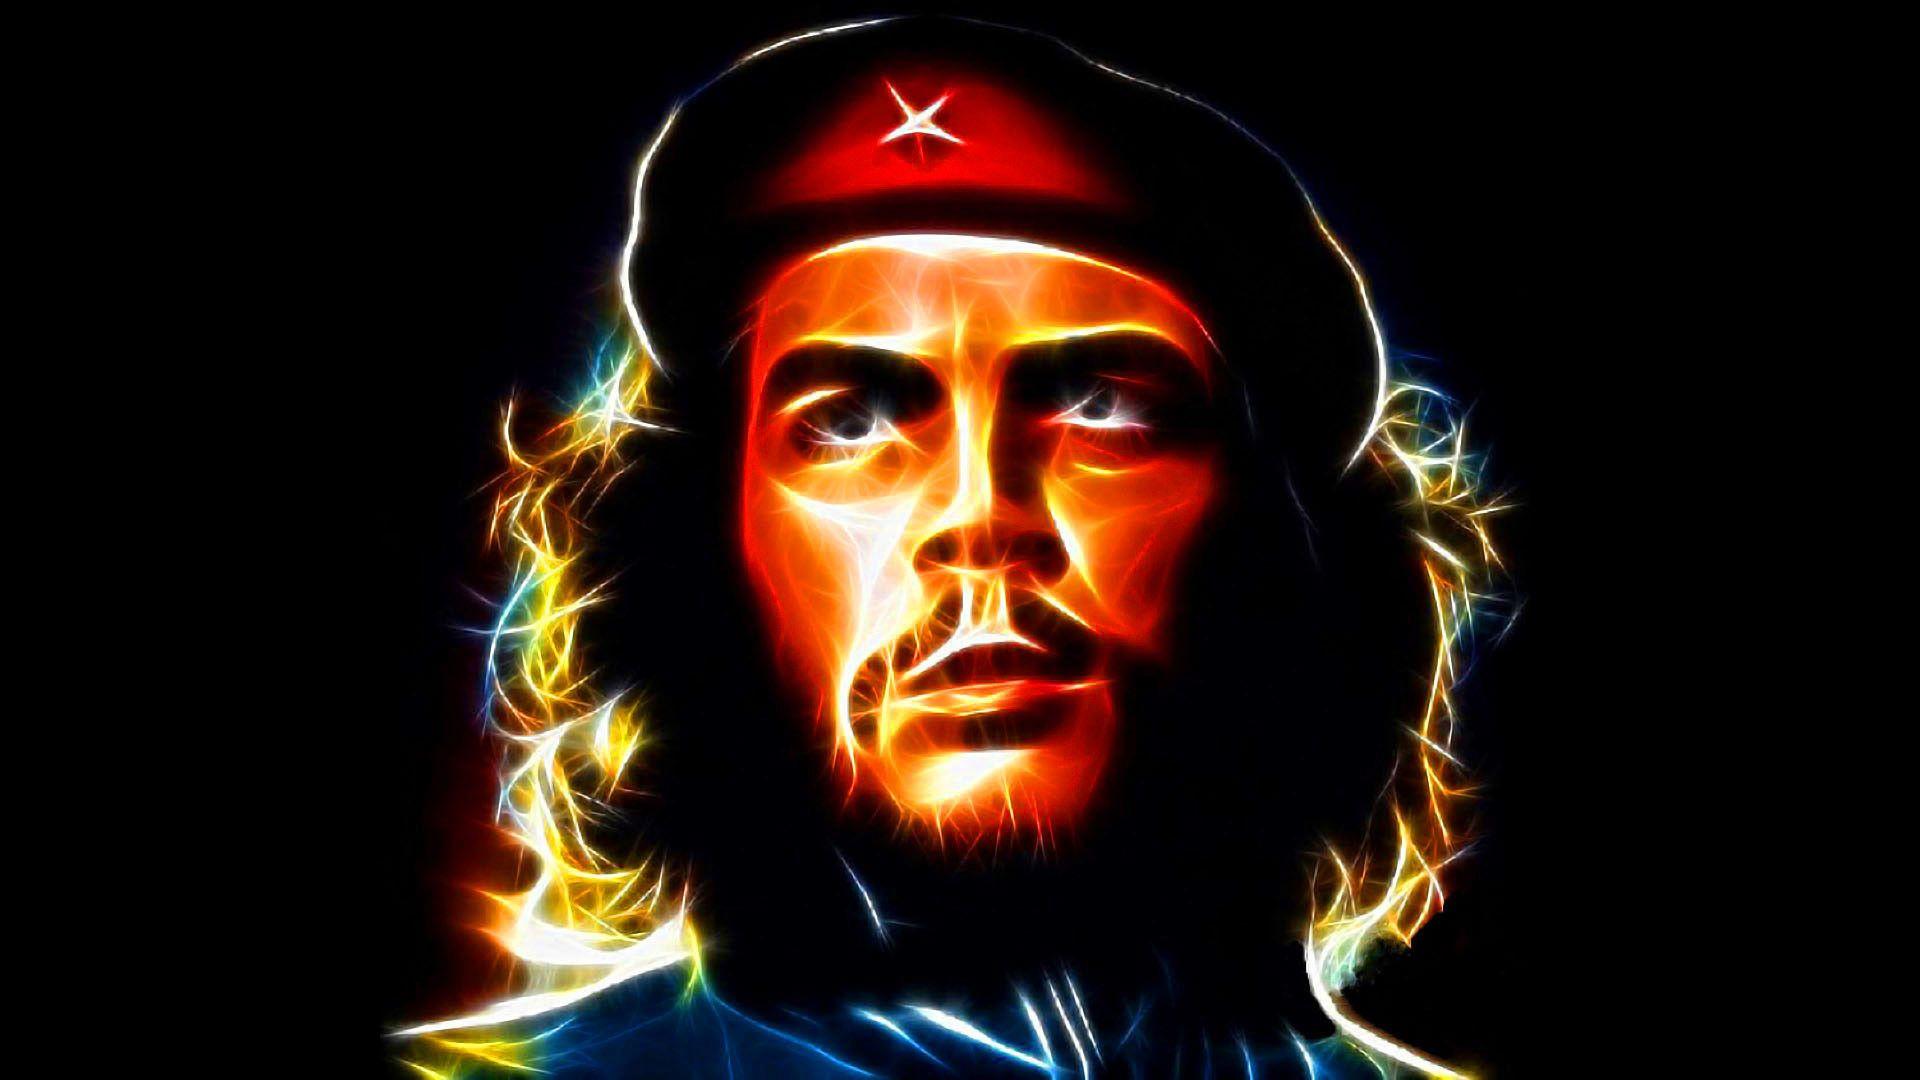 Guevara Wallpaper For Mobile